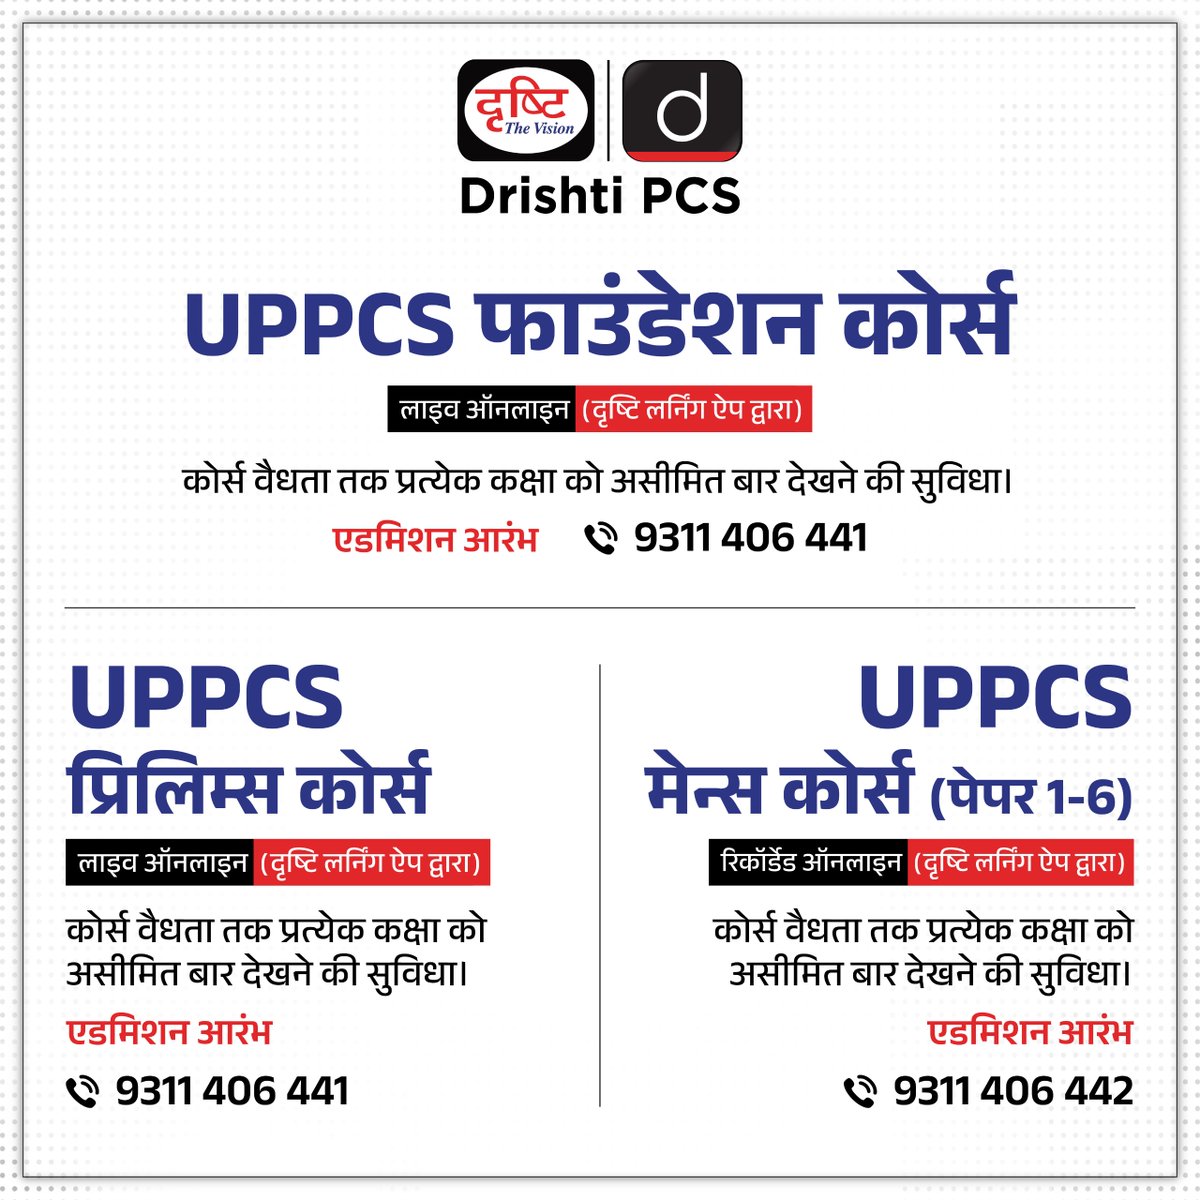 UPPCS के ऑनलाइन कोर्सेज़

एडमिशन ओपन

कोर्स से संबंधित विस्तृत जानकारी या एडमिशन के लिये क्लिक करें इस लिंक पर: drishti.xyz/Hindi-Online-C…

अथवा संपर्क करें: 9311406441

#UPPCS #Foundationbatch #Prelims #Mains #OnlineCourse #DrishtiPCS